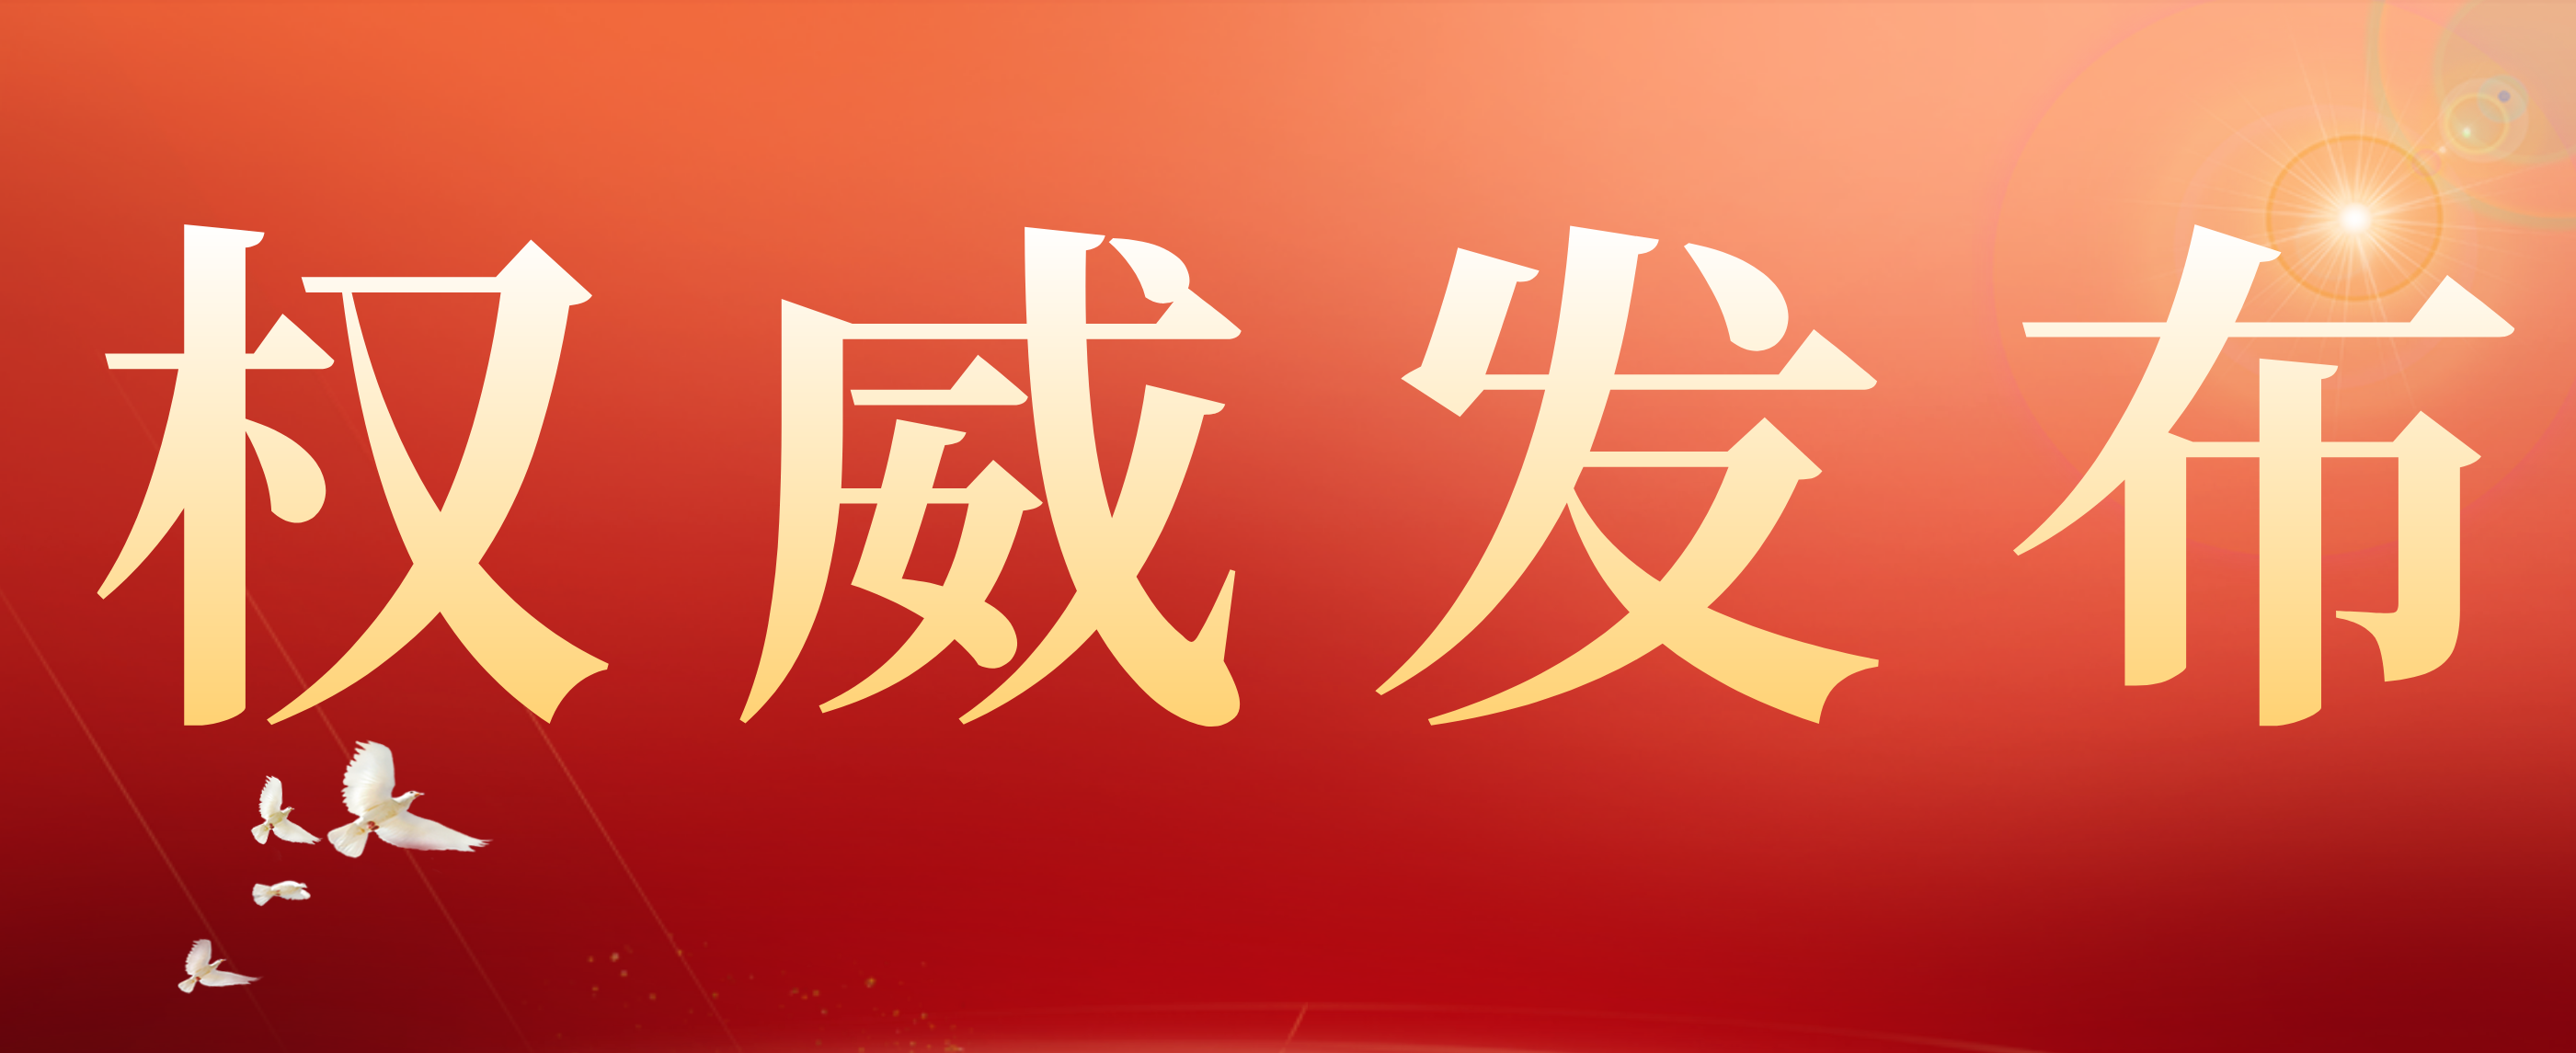 第二十二届<font color="red">吴阶平</font>-保罗·杨森医学药学奖揭晓